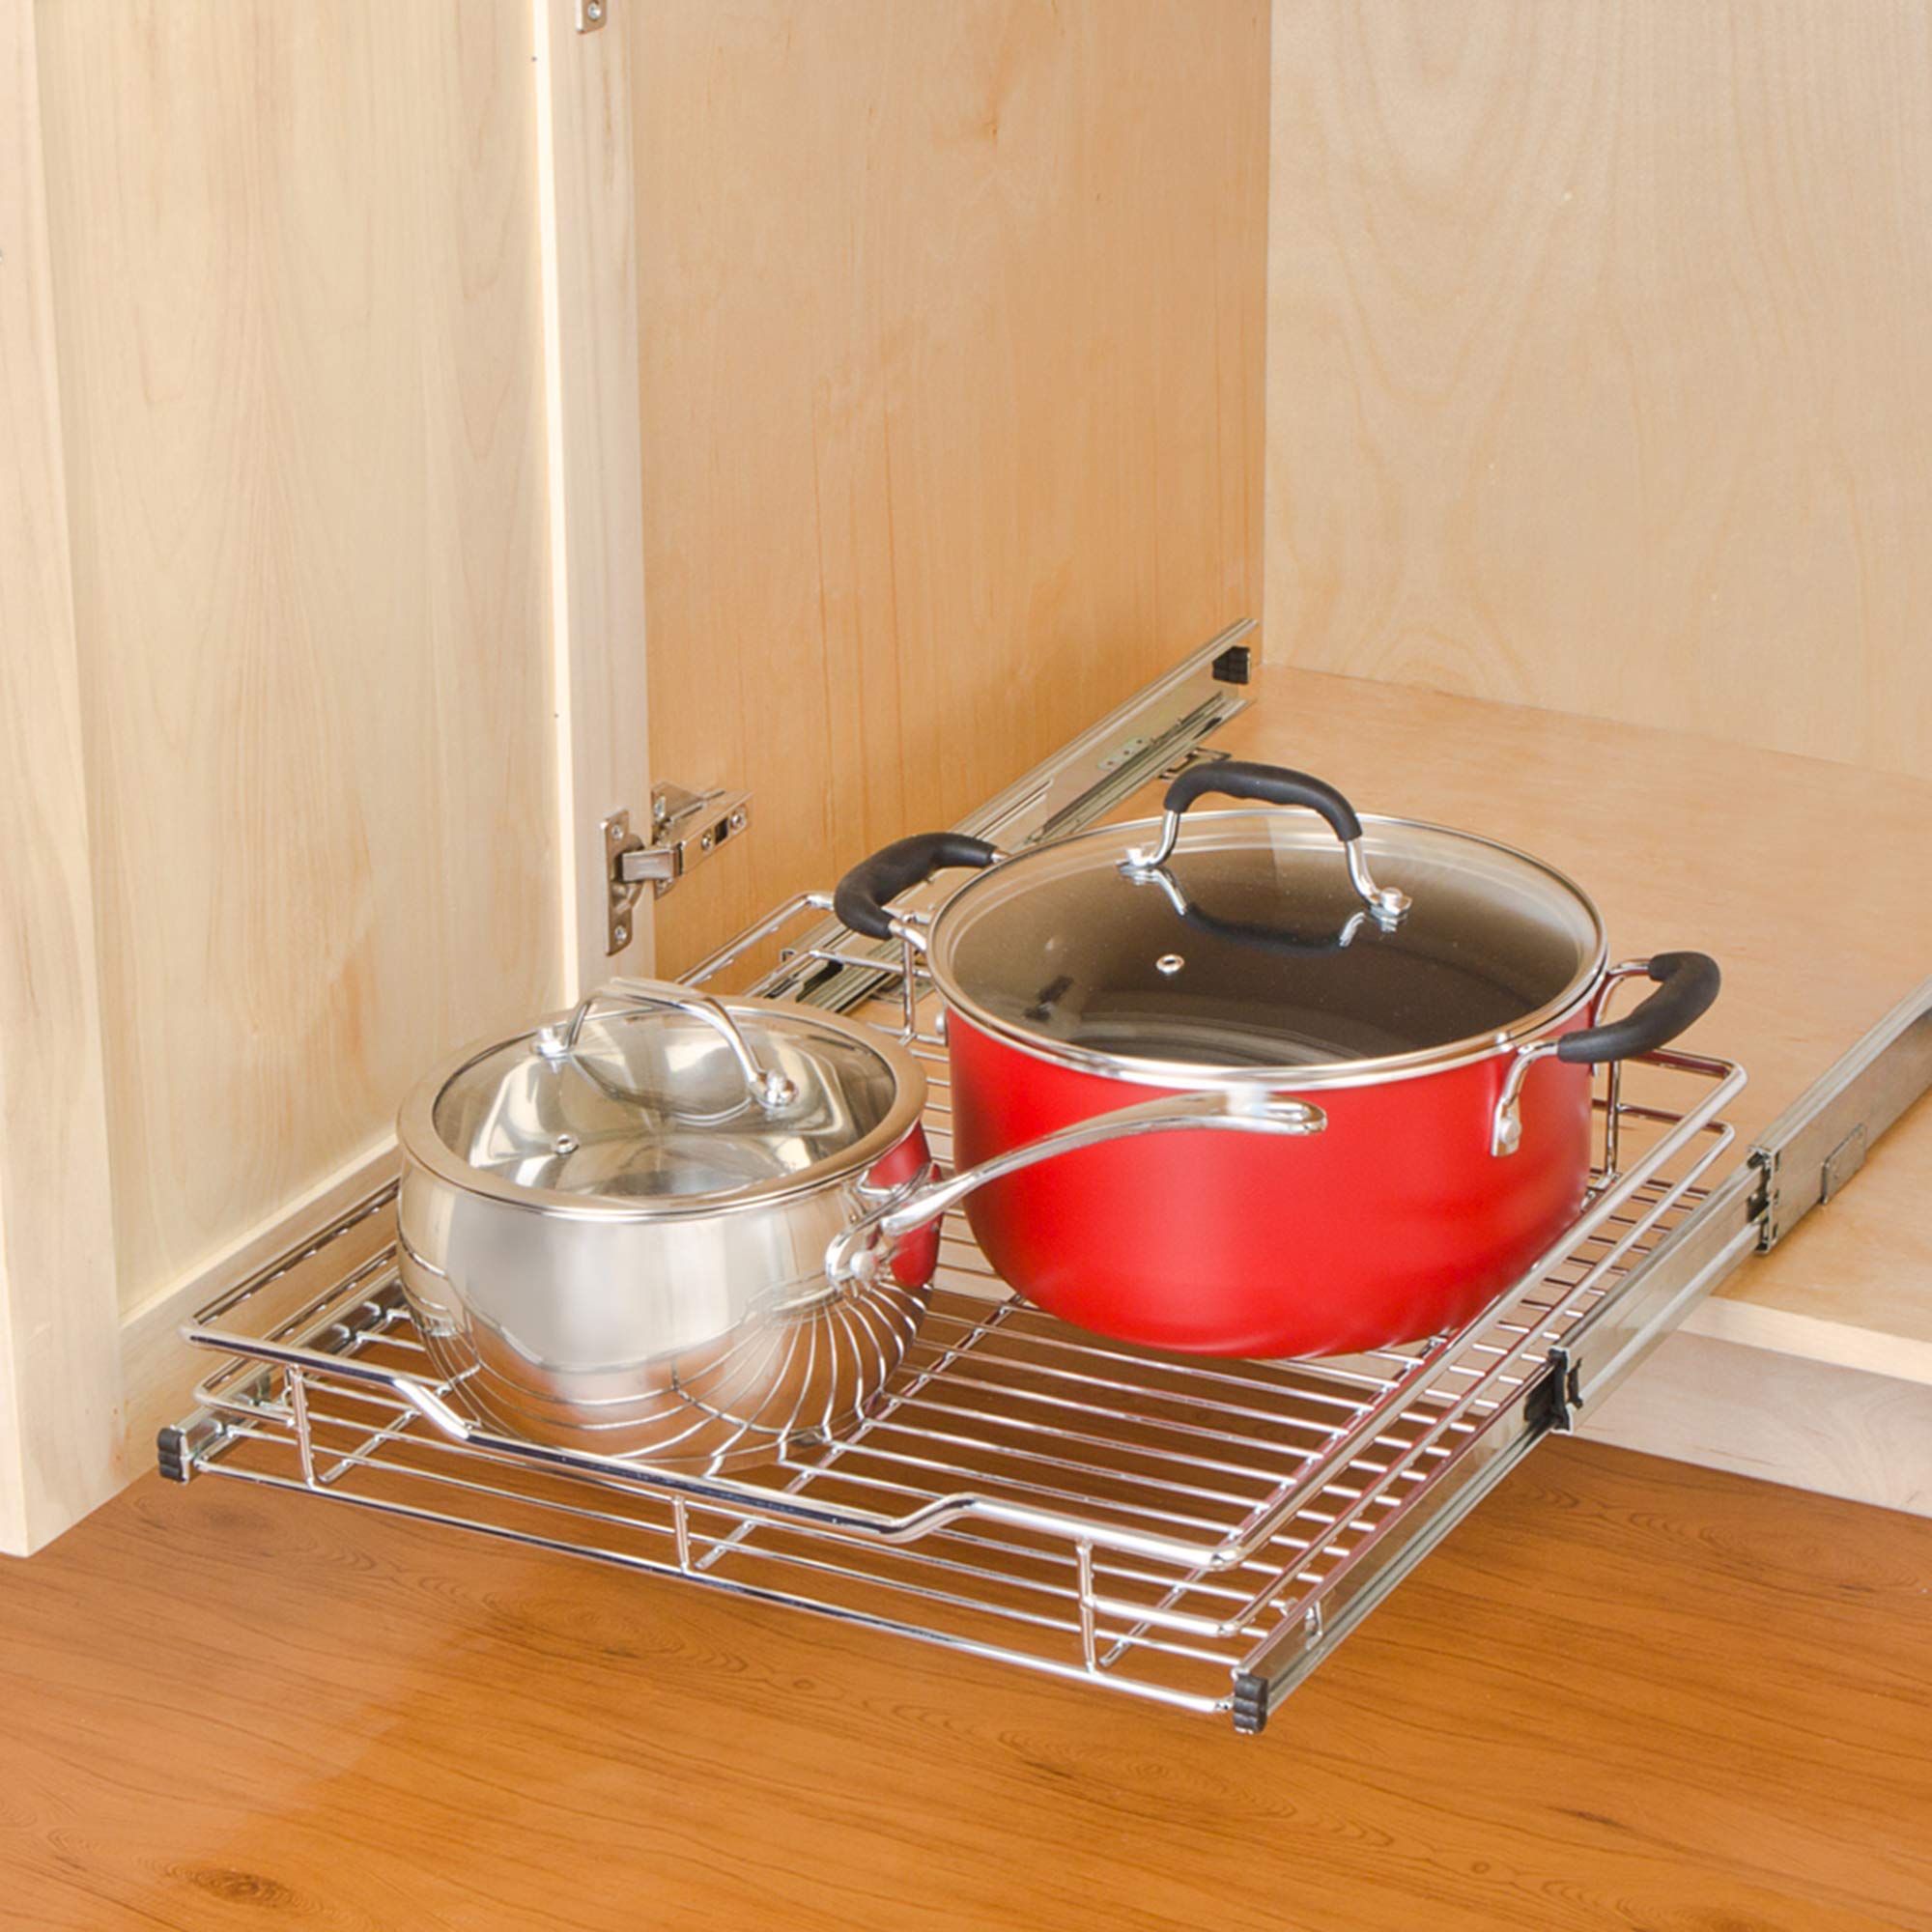 https://www.shopsmartdesign.com/cdn/shop/products/sliding-pull-out-metal-cabinet-shelf-multiple-sizes-smart-design-kitchen-8435290-incrementing-number-441731.jpg?v=1682709397